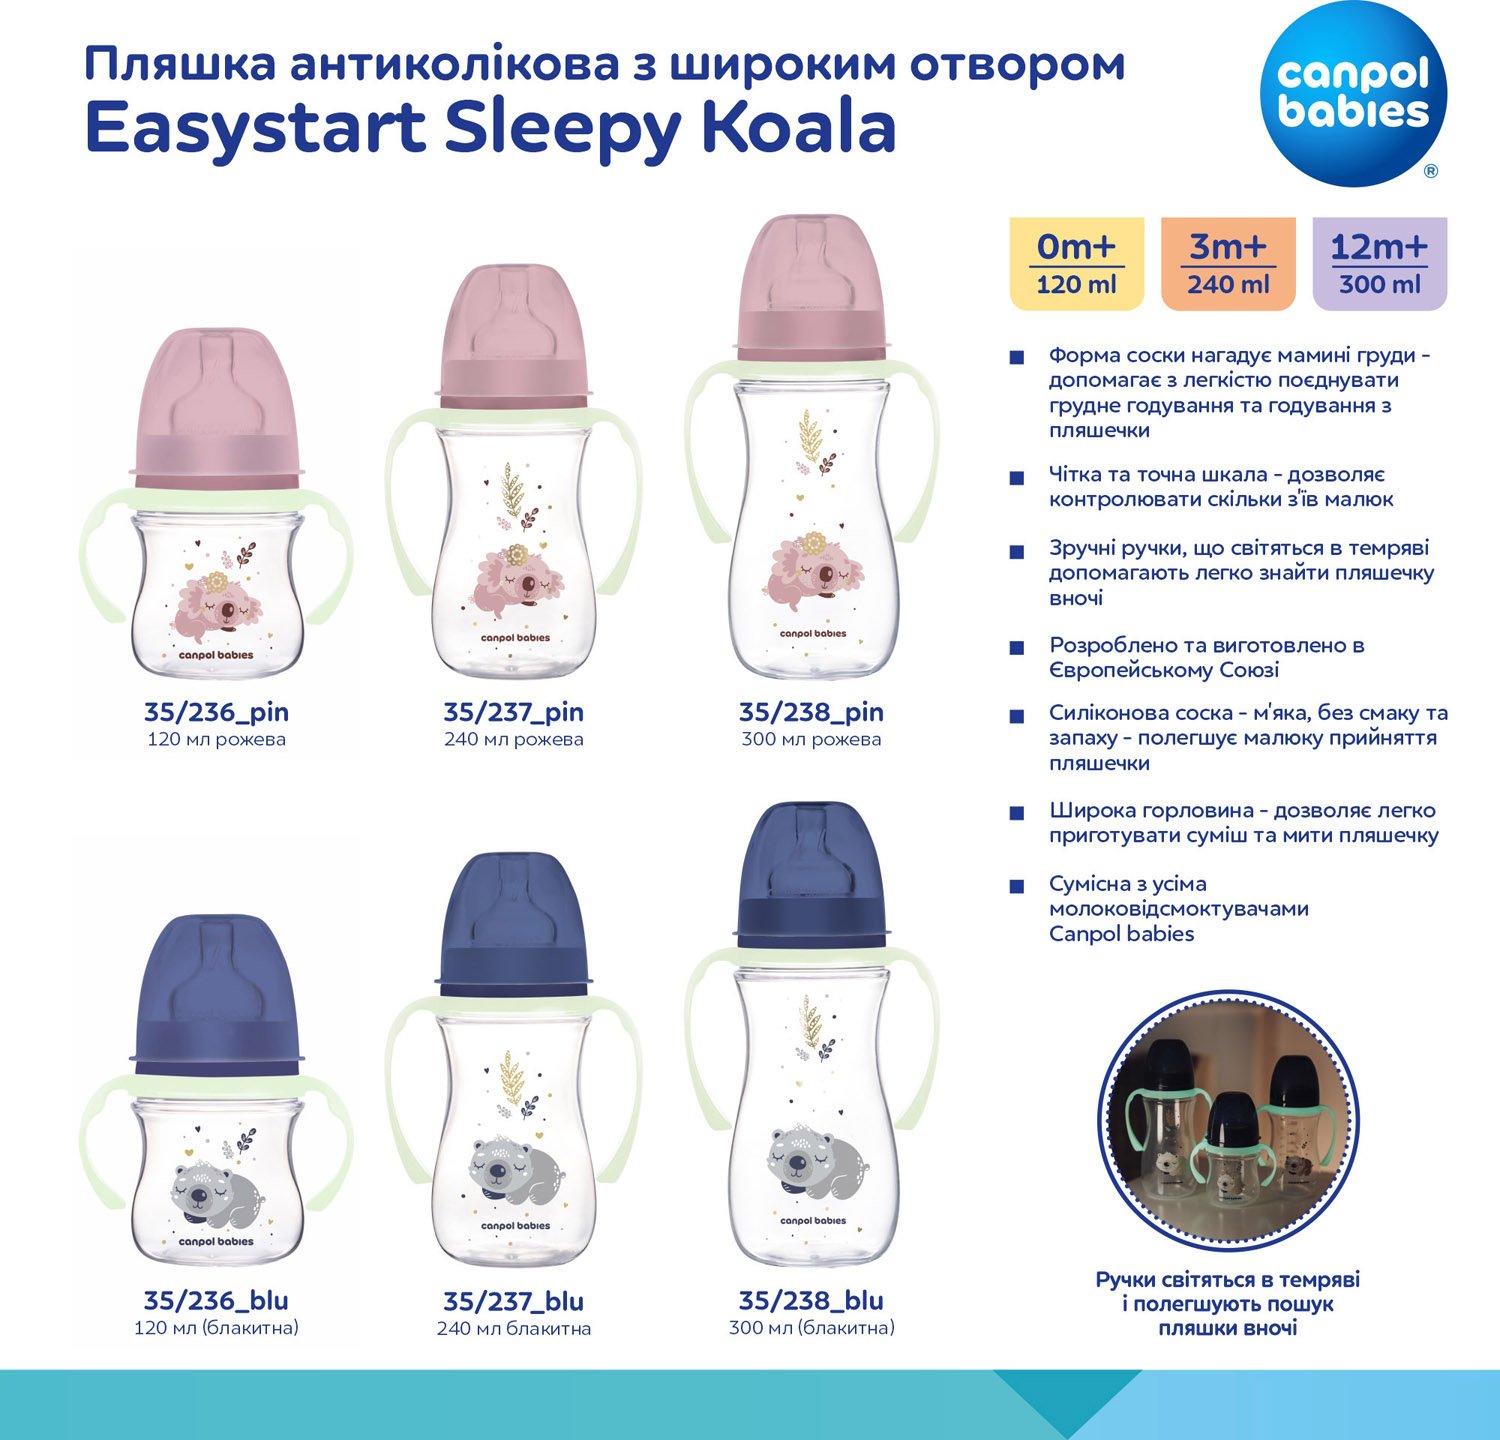 Пляшечка для годування Canpol babies Easystart Sleepy Koala, антиколікова, 120 мл, блакитна (35/236_blu) - фото 11